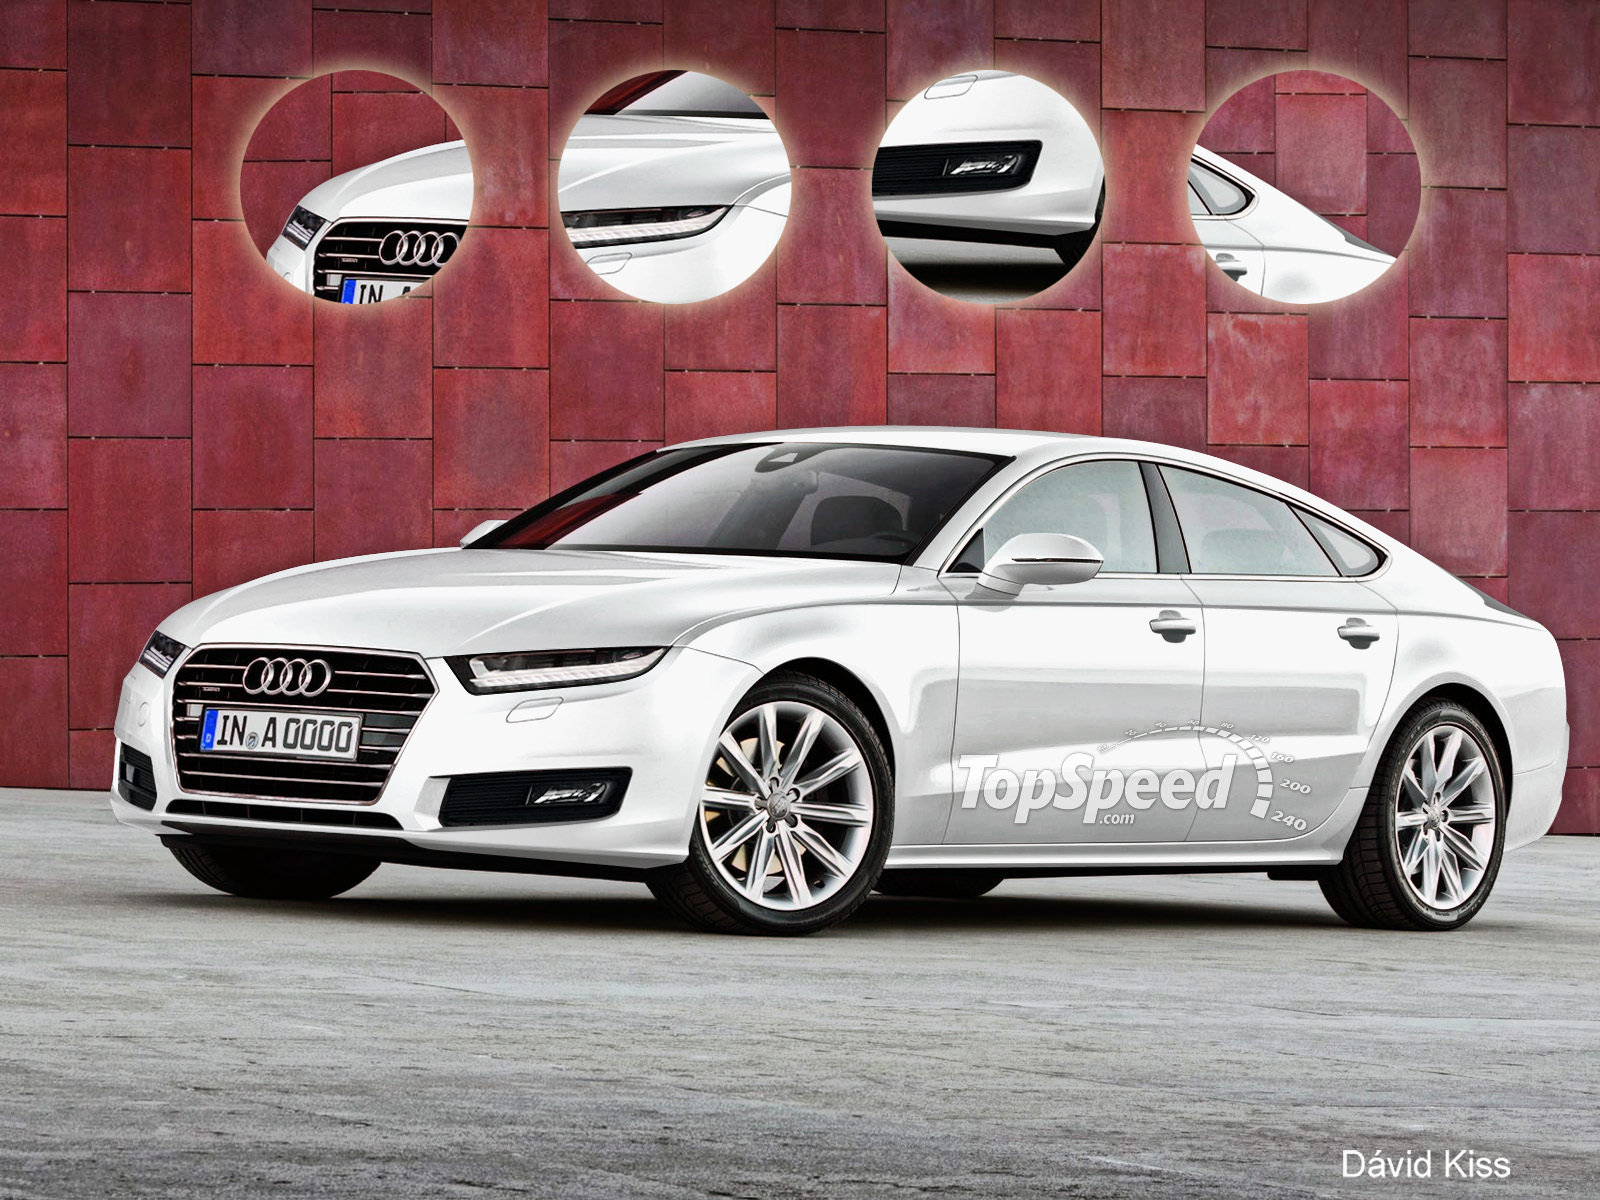 Audi A9 Backgrounds, Compatible - PC, Mobile, Gadgets| 1600x1200 px